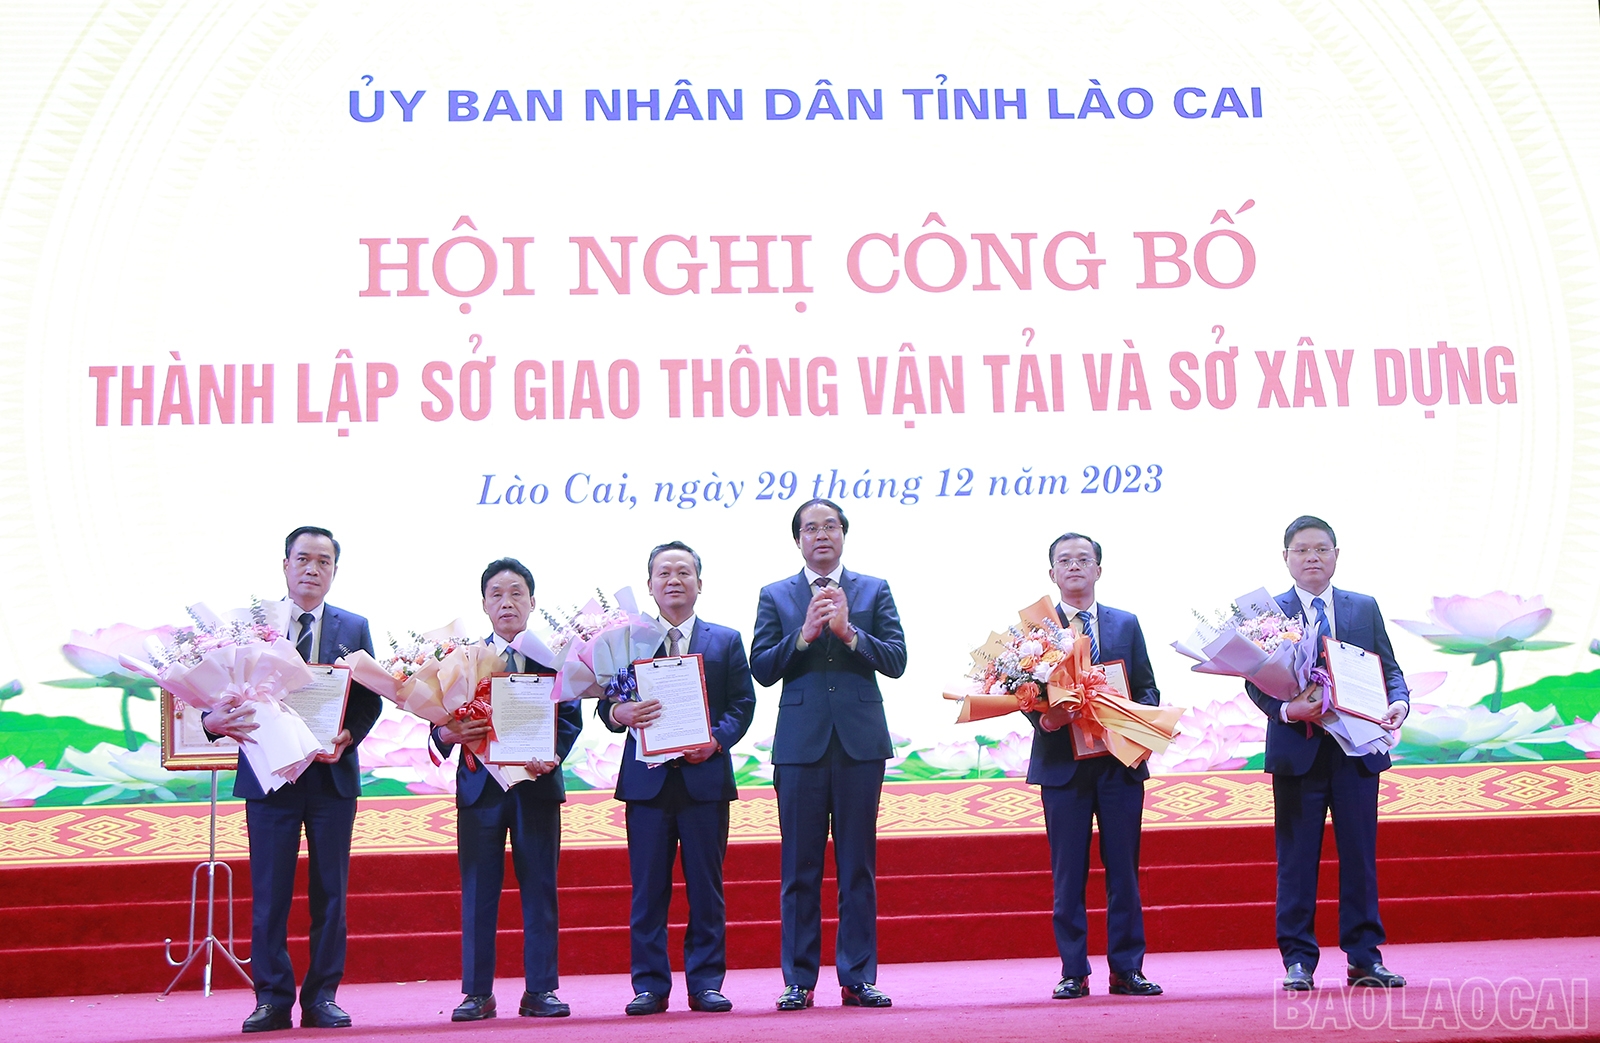 Lào Cai thành lập Sở Giao thông vận tải và Sở Xây dựng, bổ nhiệm lãnh đạo 2 Sở- Ảnh 2.